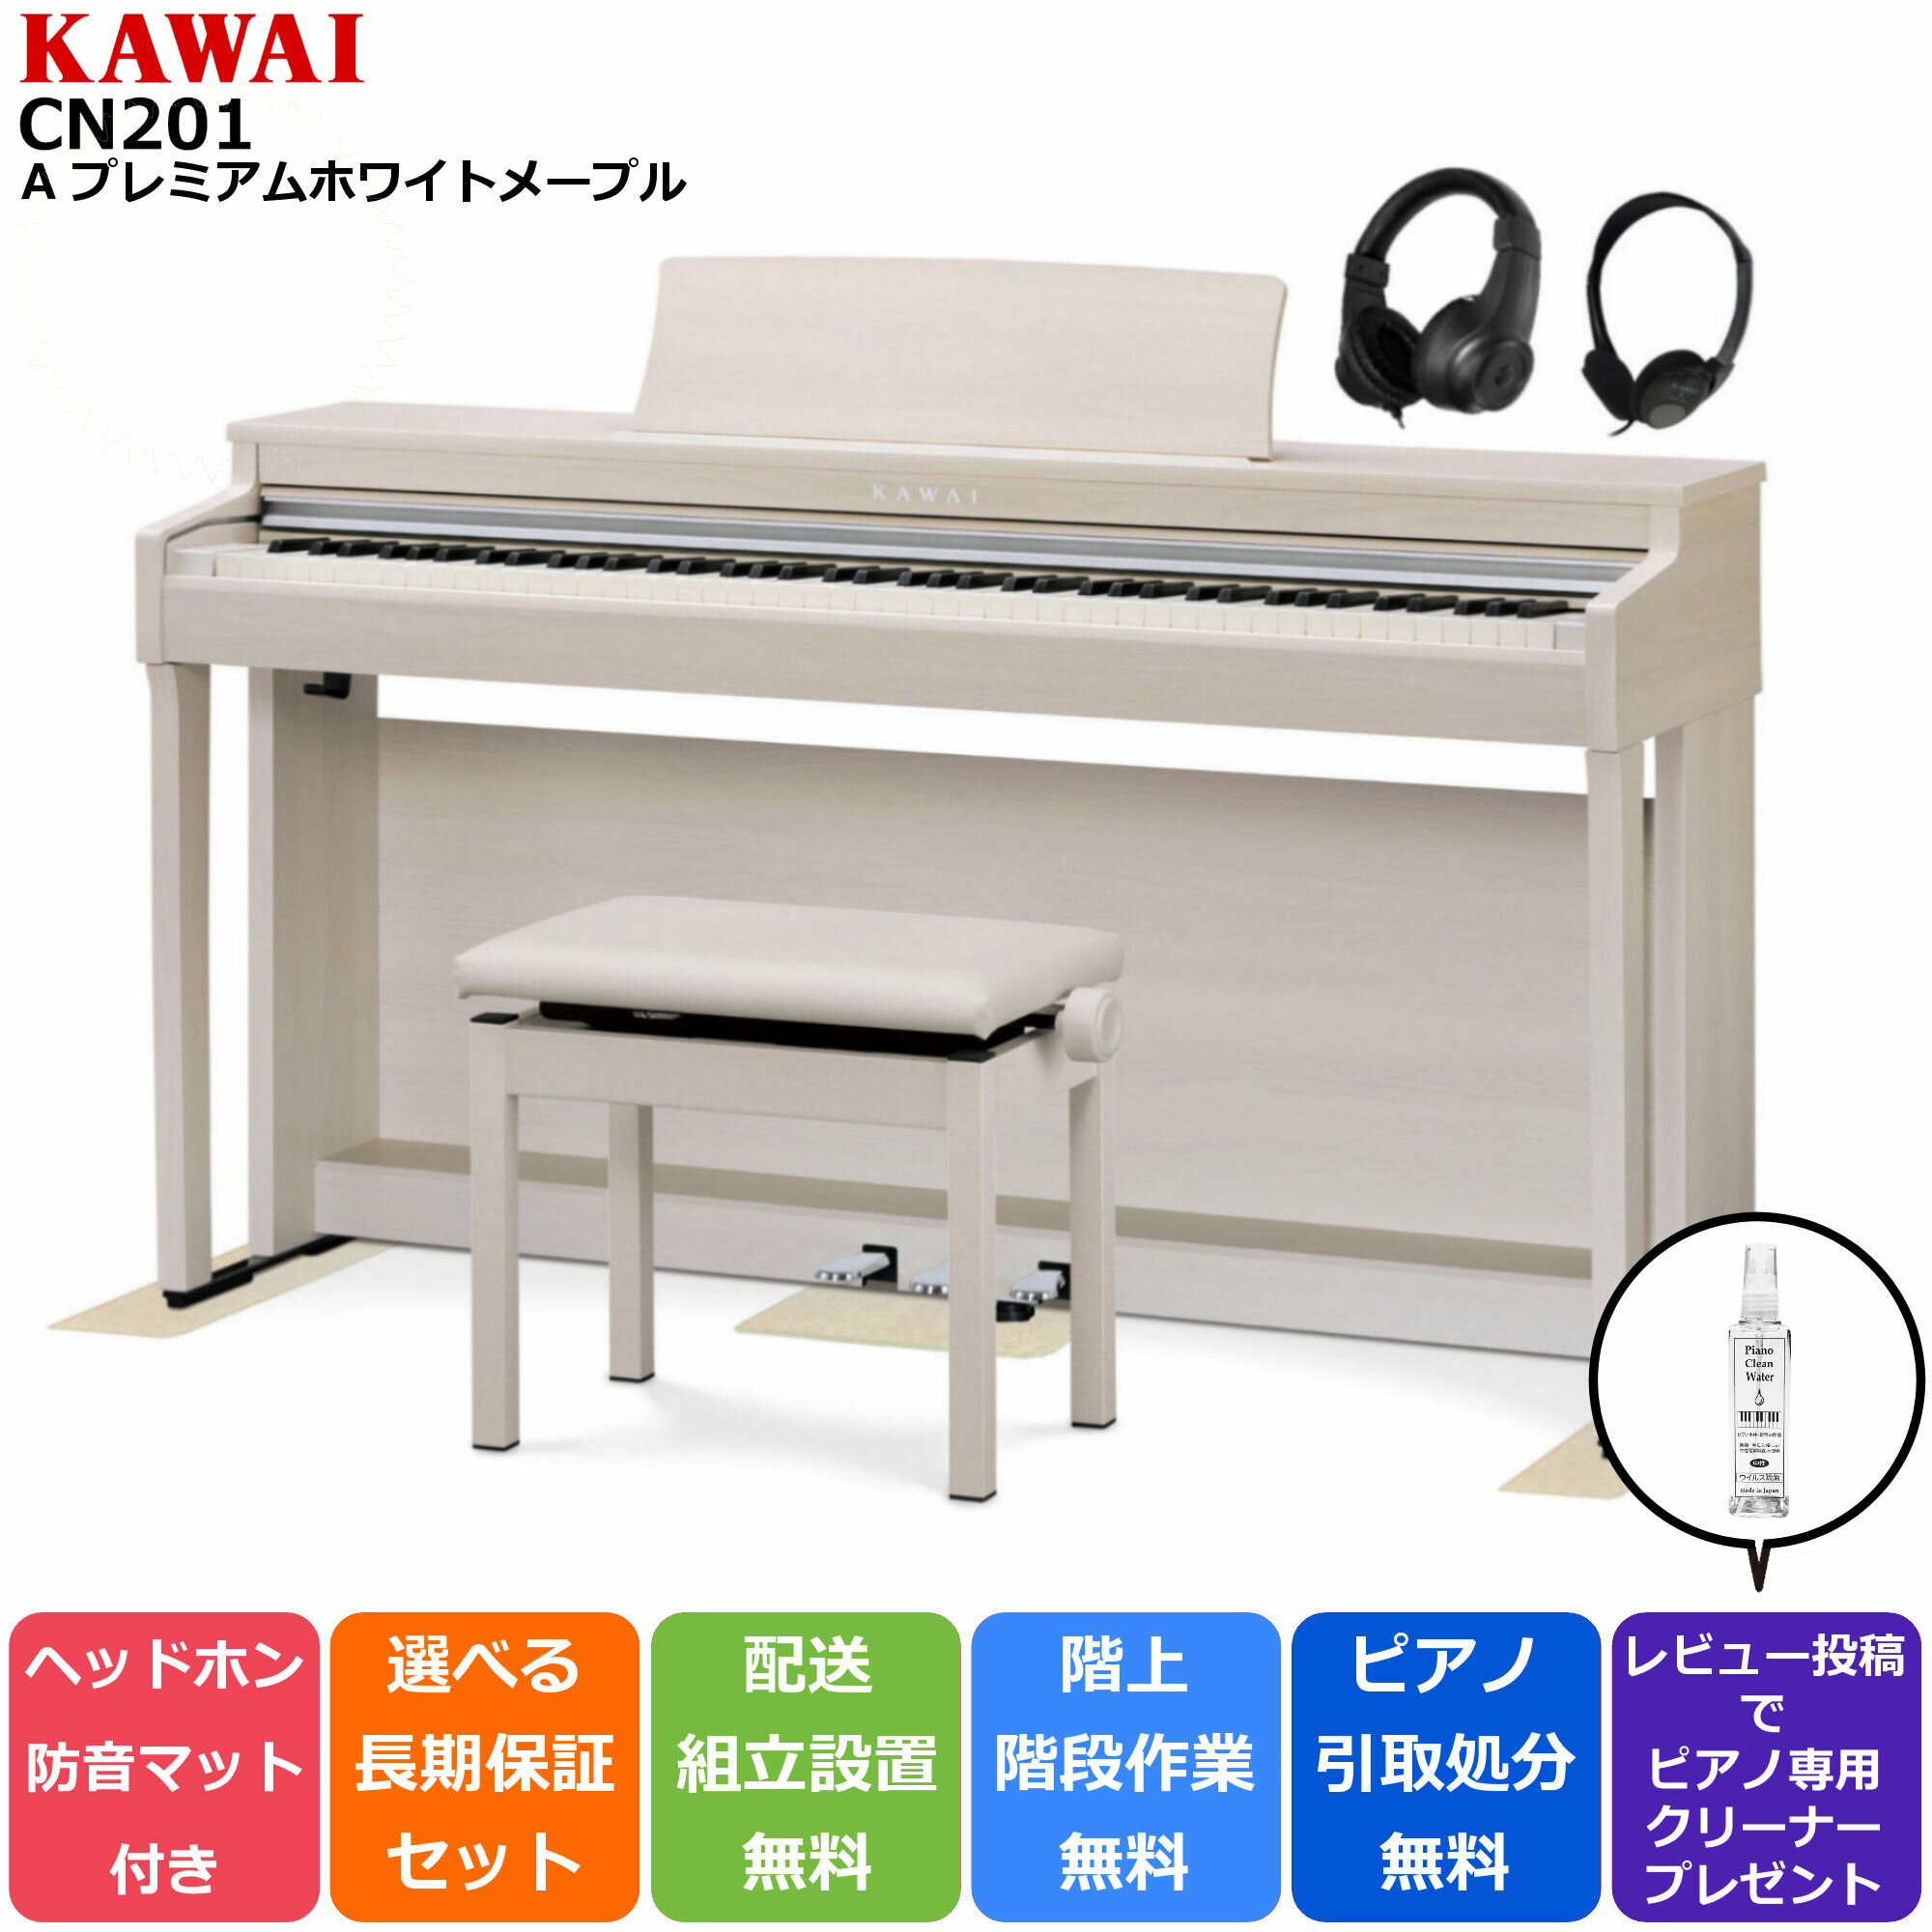 限定価格セール カワイ電子ピアノ CN201